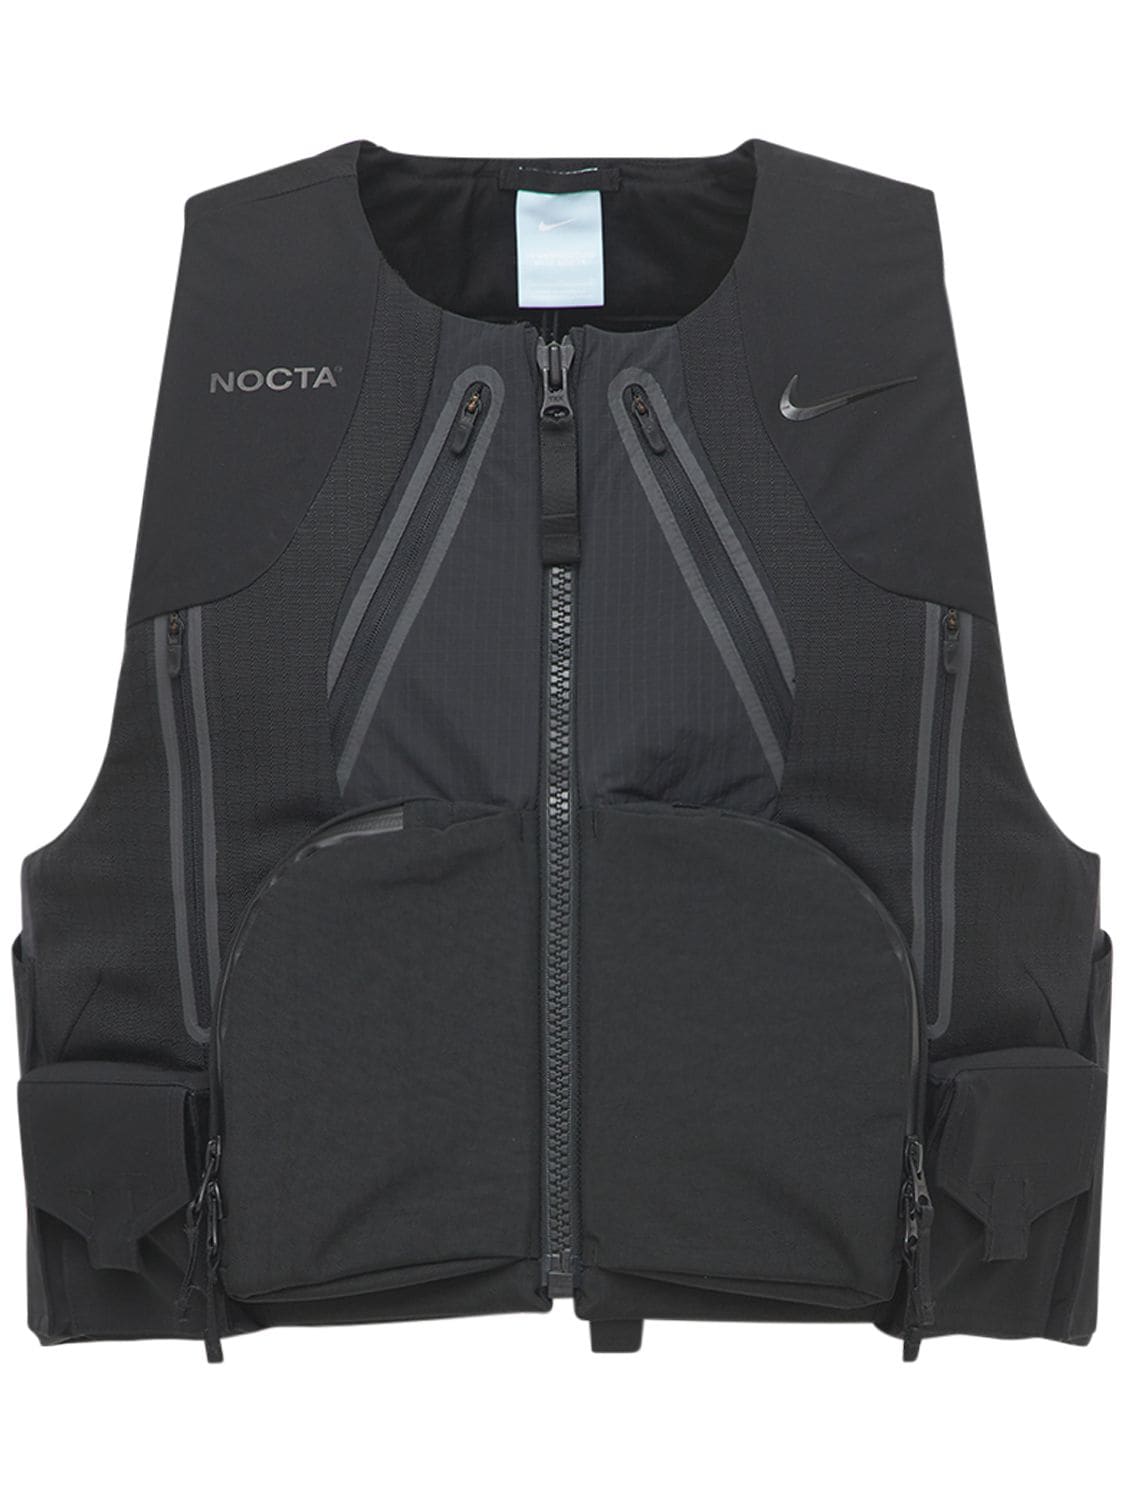 Nike Nocta Nylon Ripstop Vest In Black